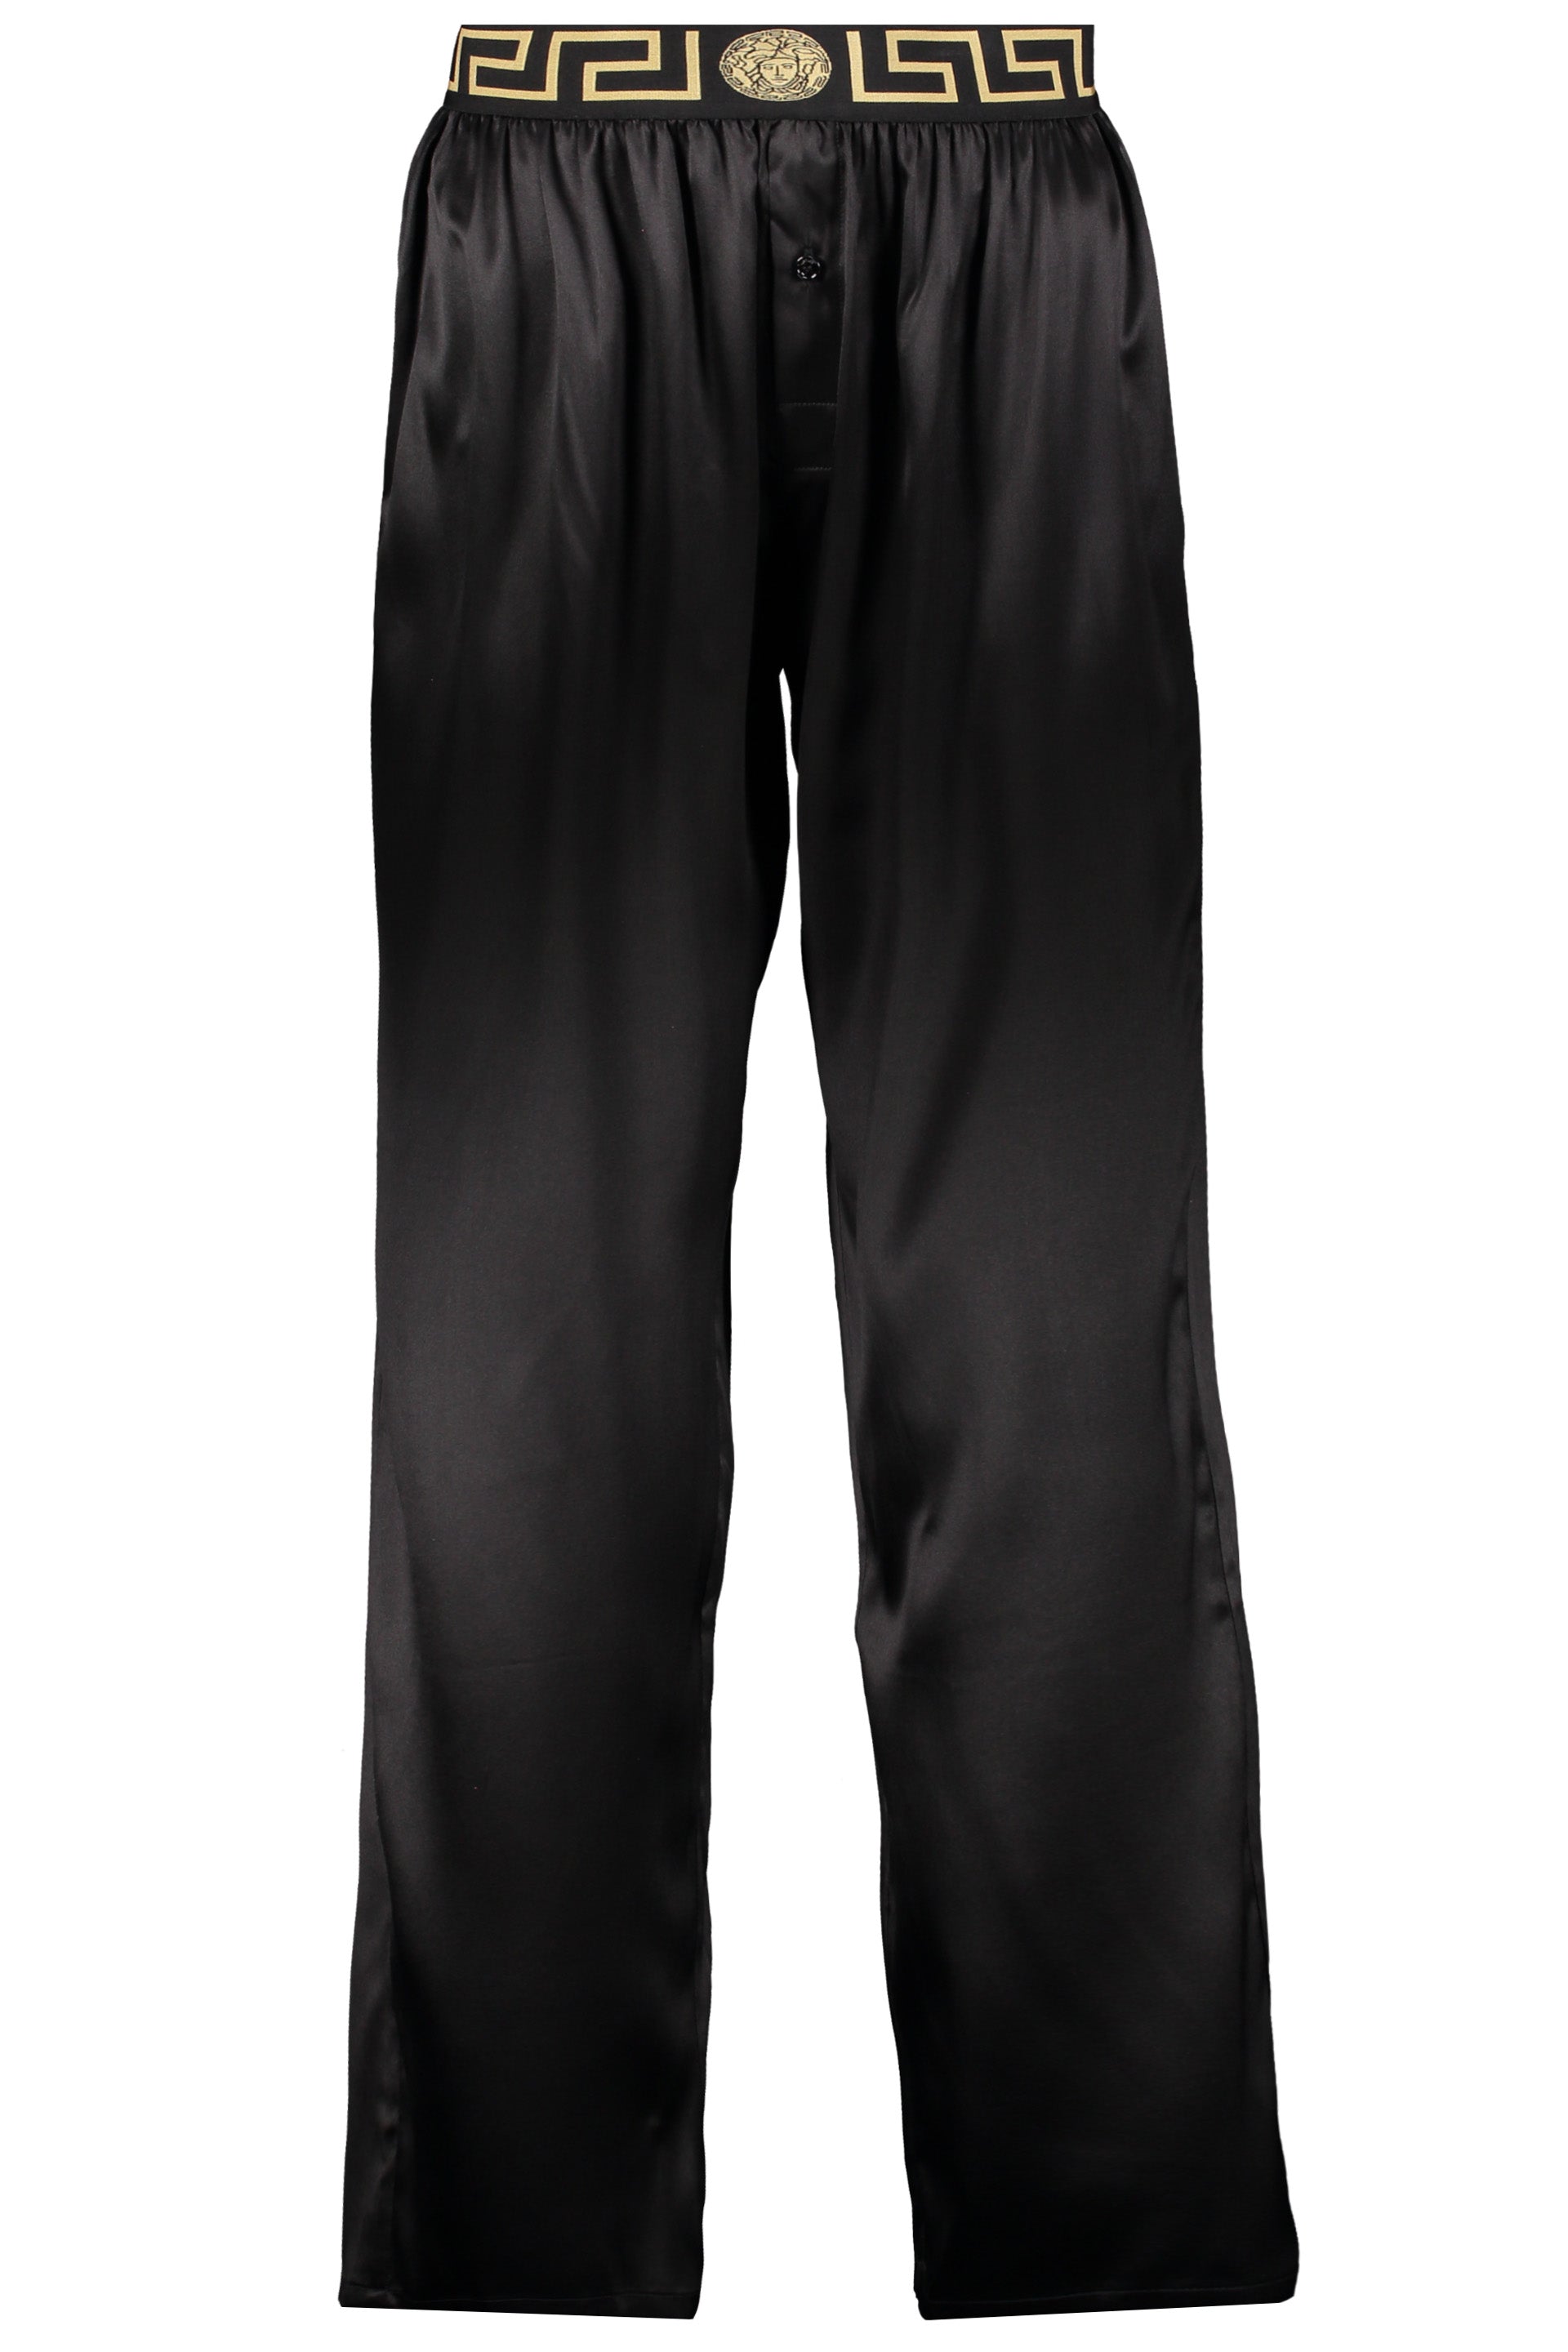 Silk pajama pants-Versace-OUTLET-SALE-1-ARCHIVIST